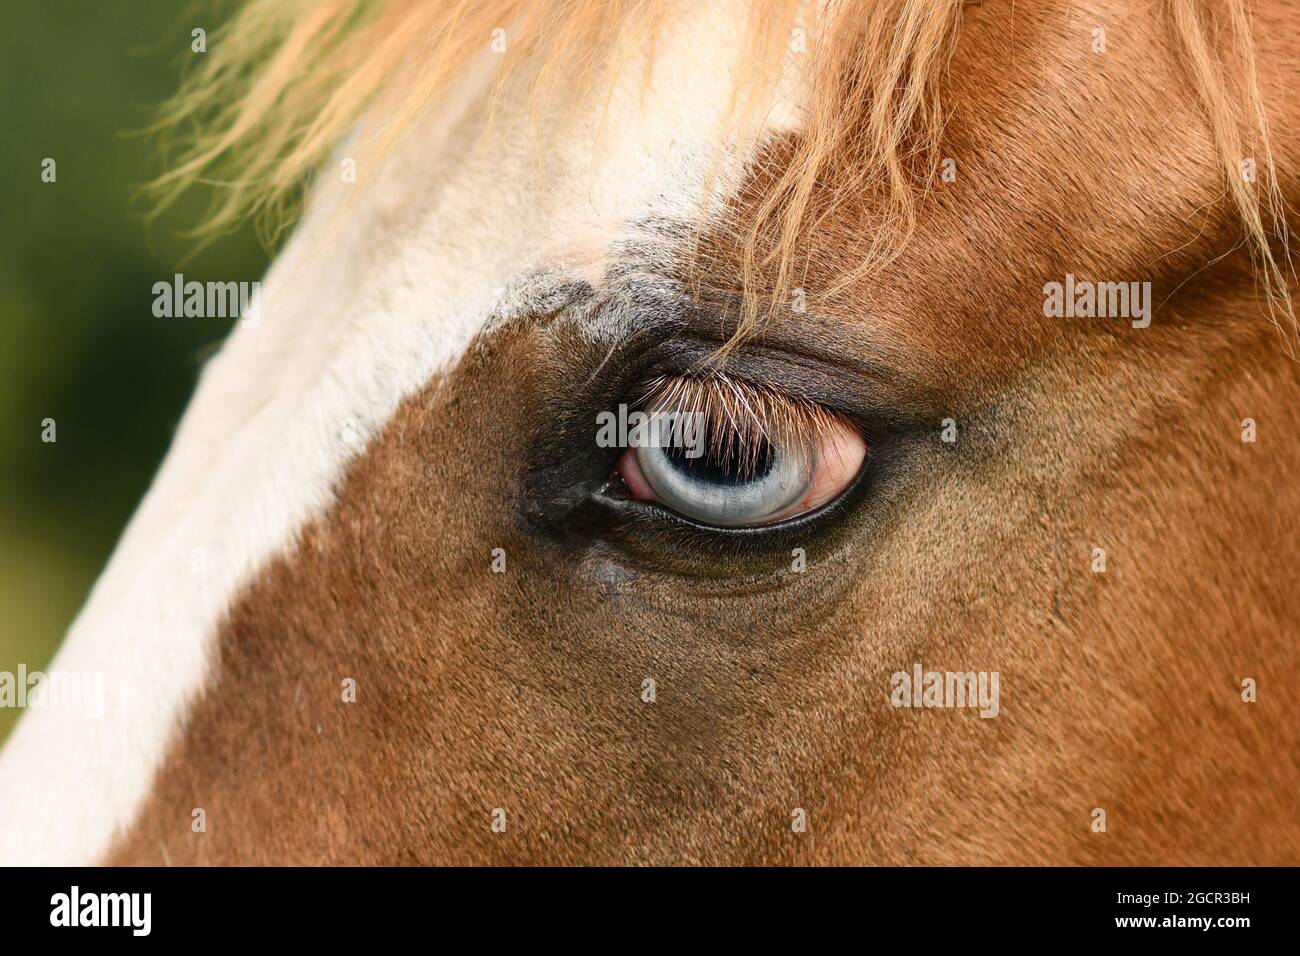 Nahaufnahme des hellblauen Auges des Pinto-Pferdes mit genetischer Mutation, die die Pigmententwicklung in der Iris beeinflusst, vollständige Heterochromie genannt Stockfoto